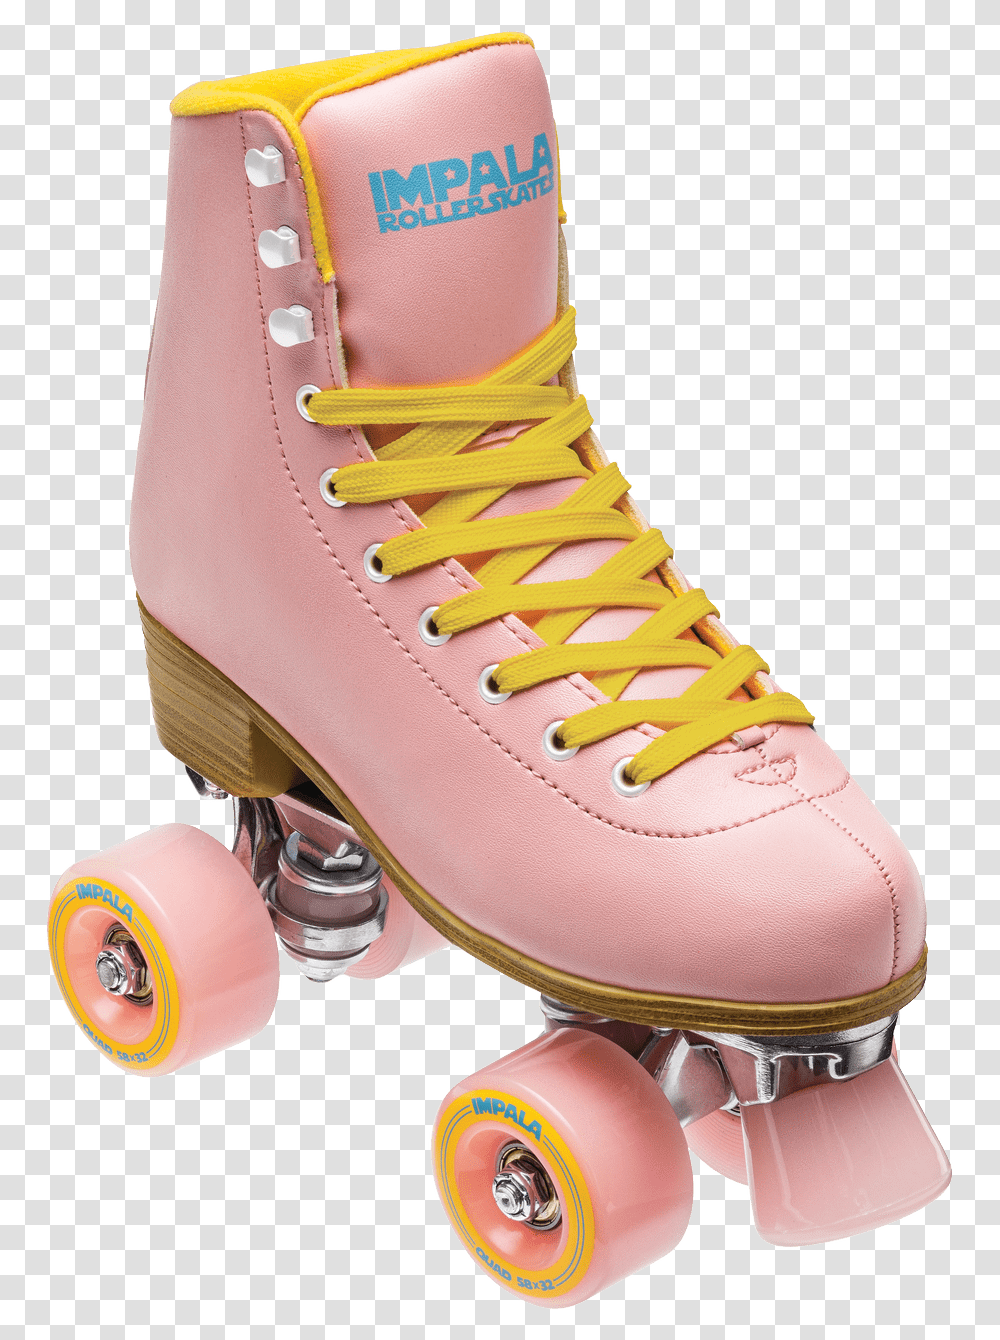 Pink Impala Roller Skates, Shoe, Footwear, Apparel Transparent Png